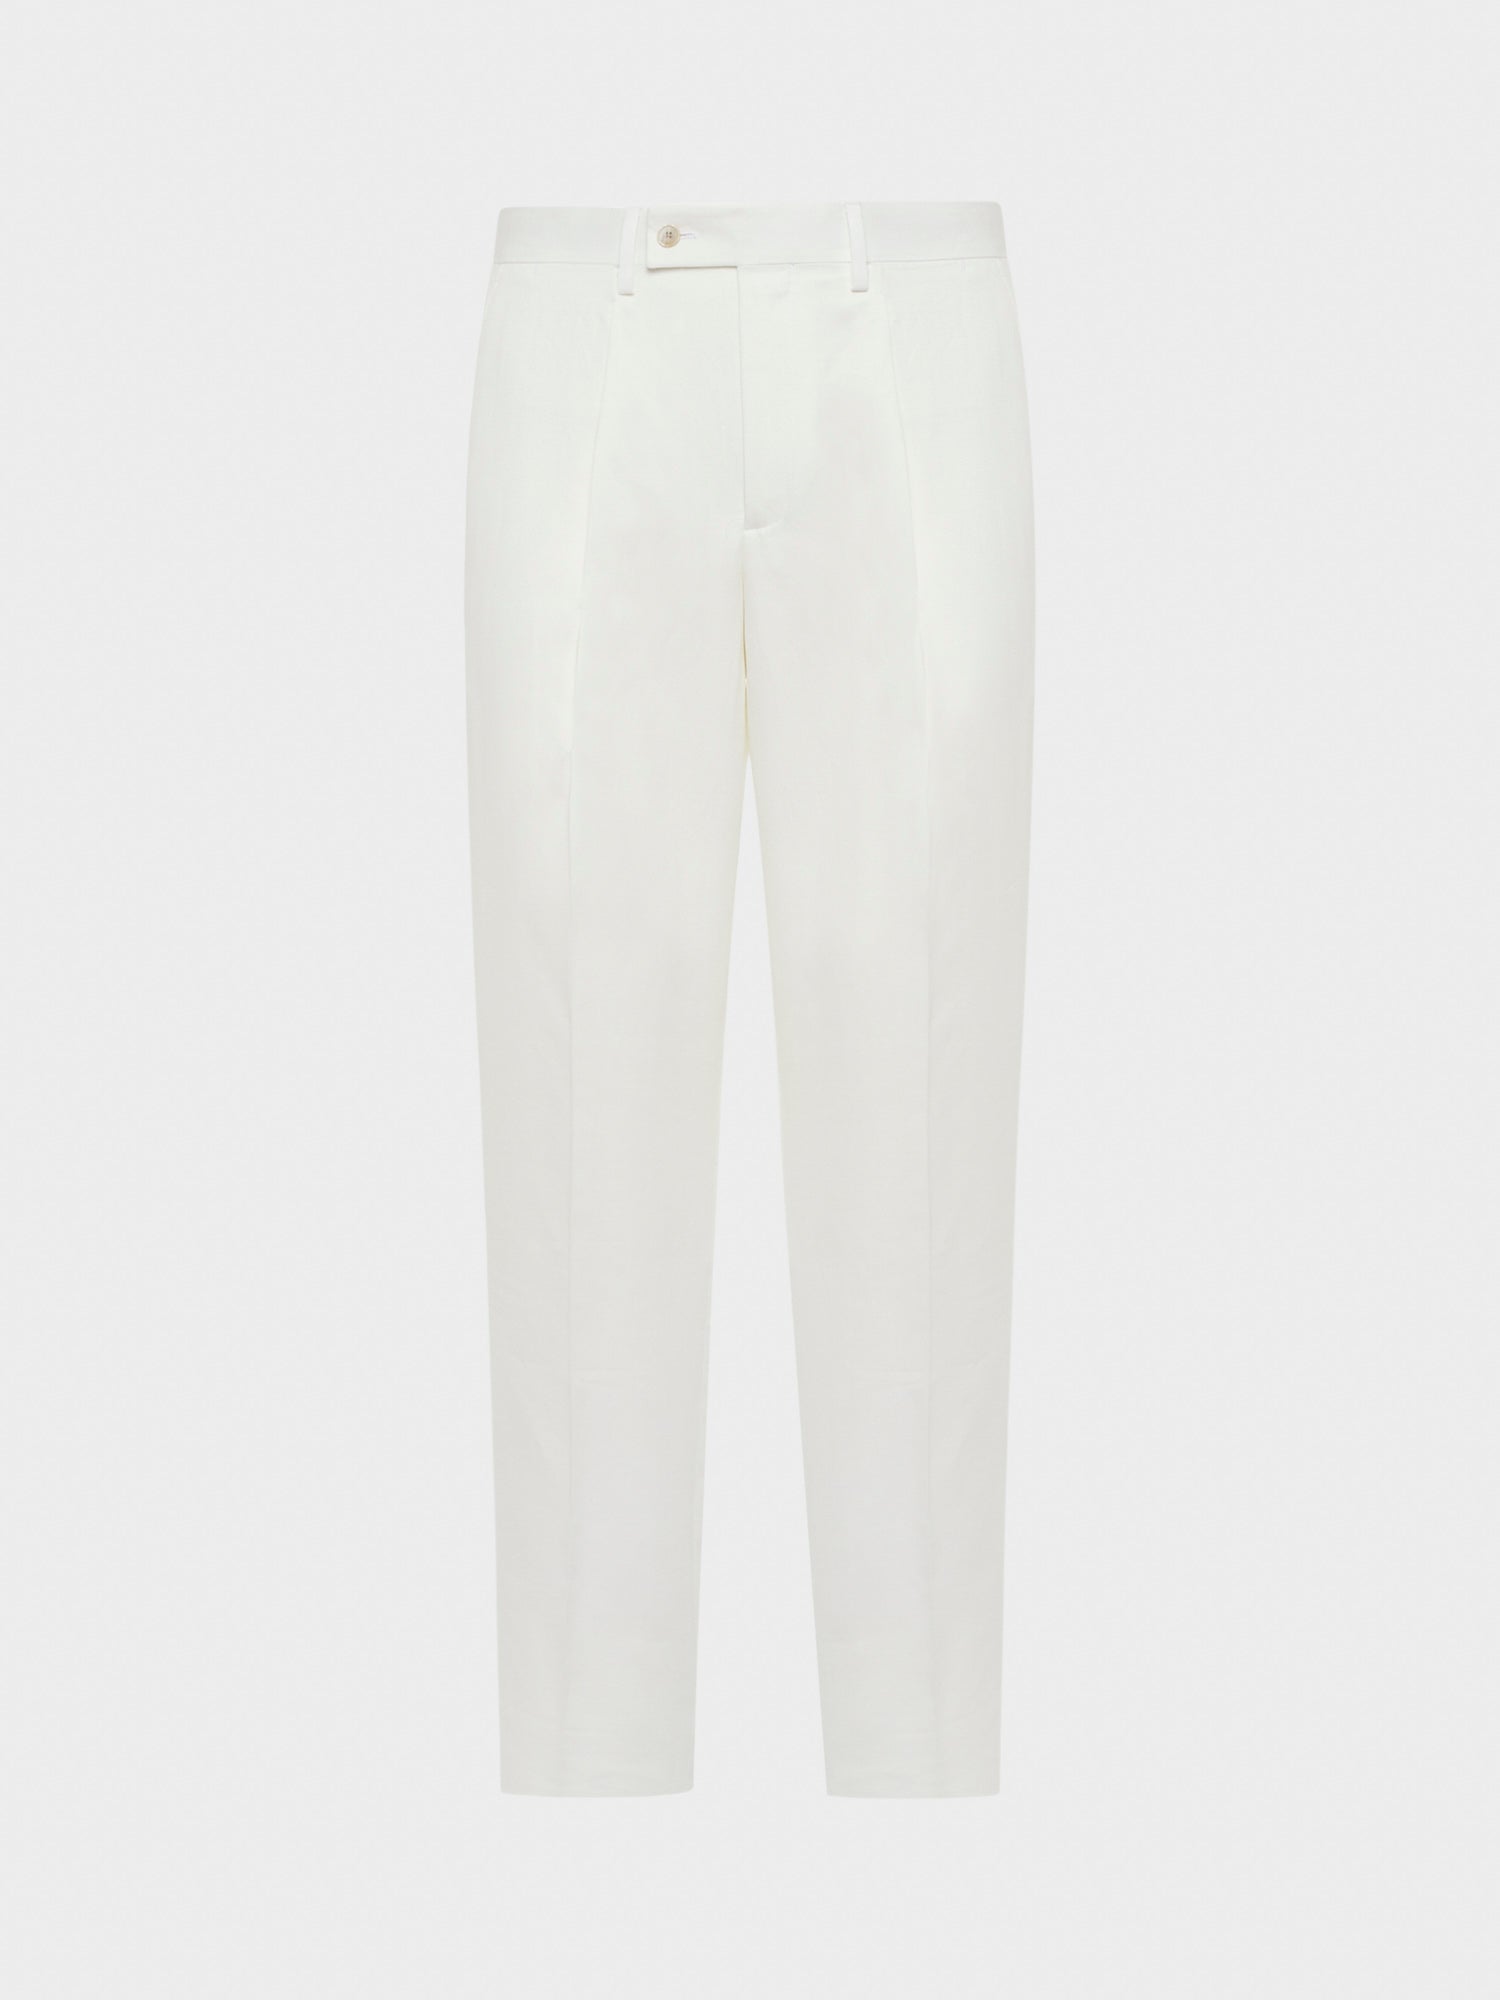 Caruso Menswear Abbigliamento Uomo Pantaloni eleganti in cotone lino seta bianco still